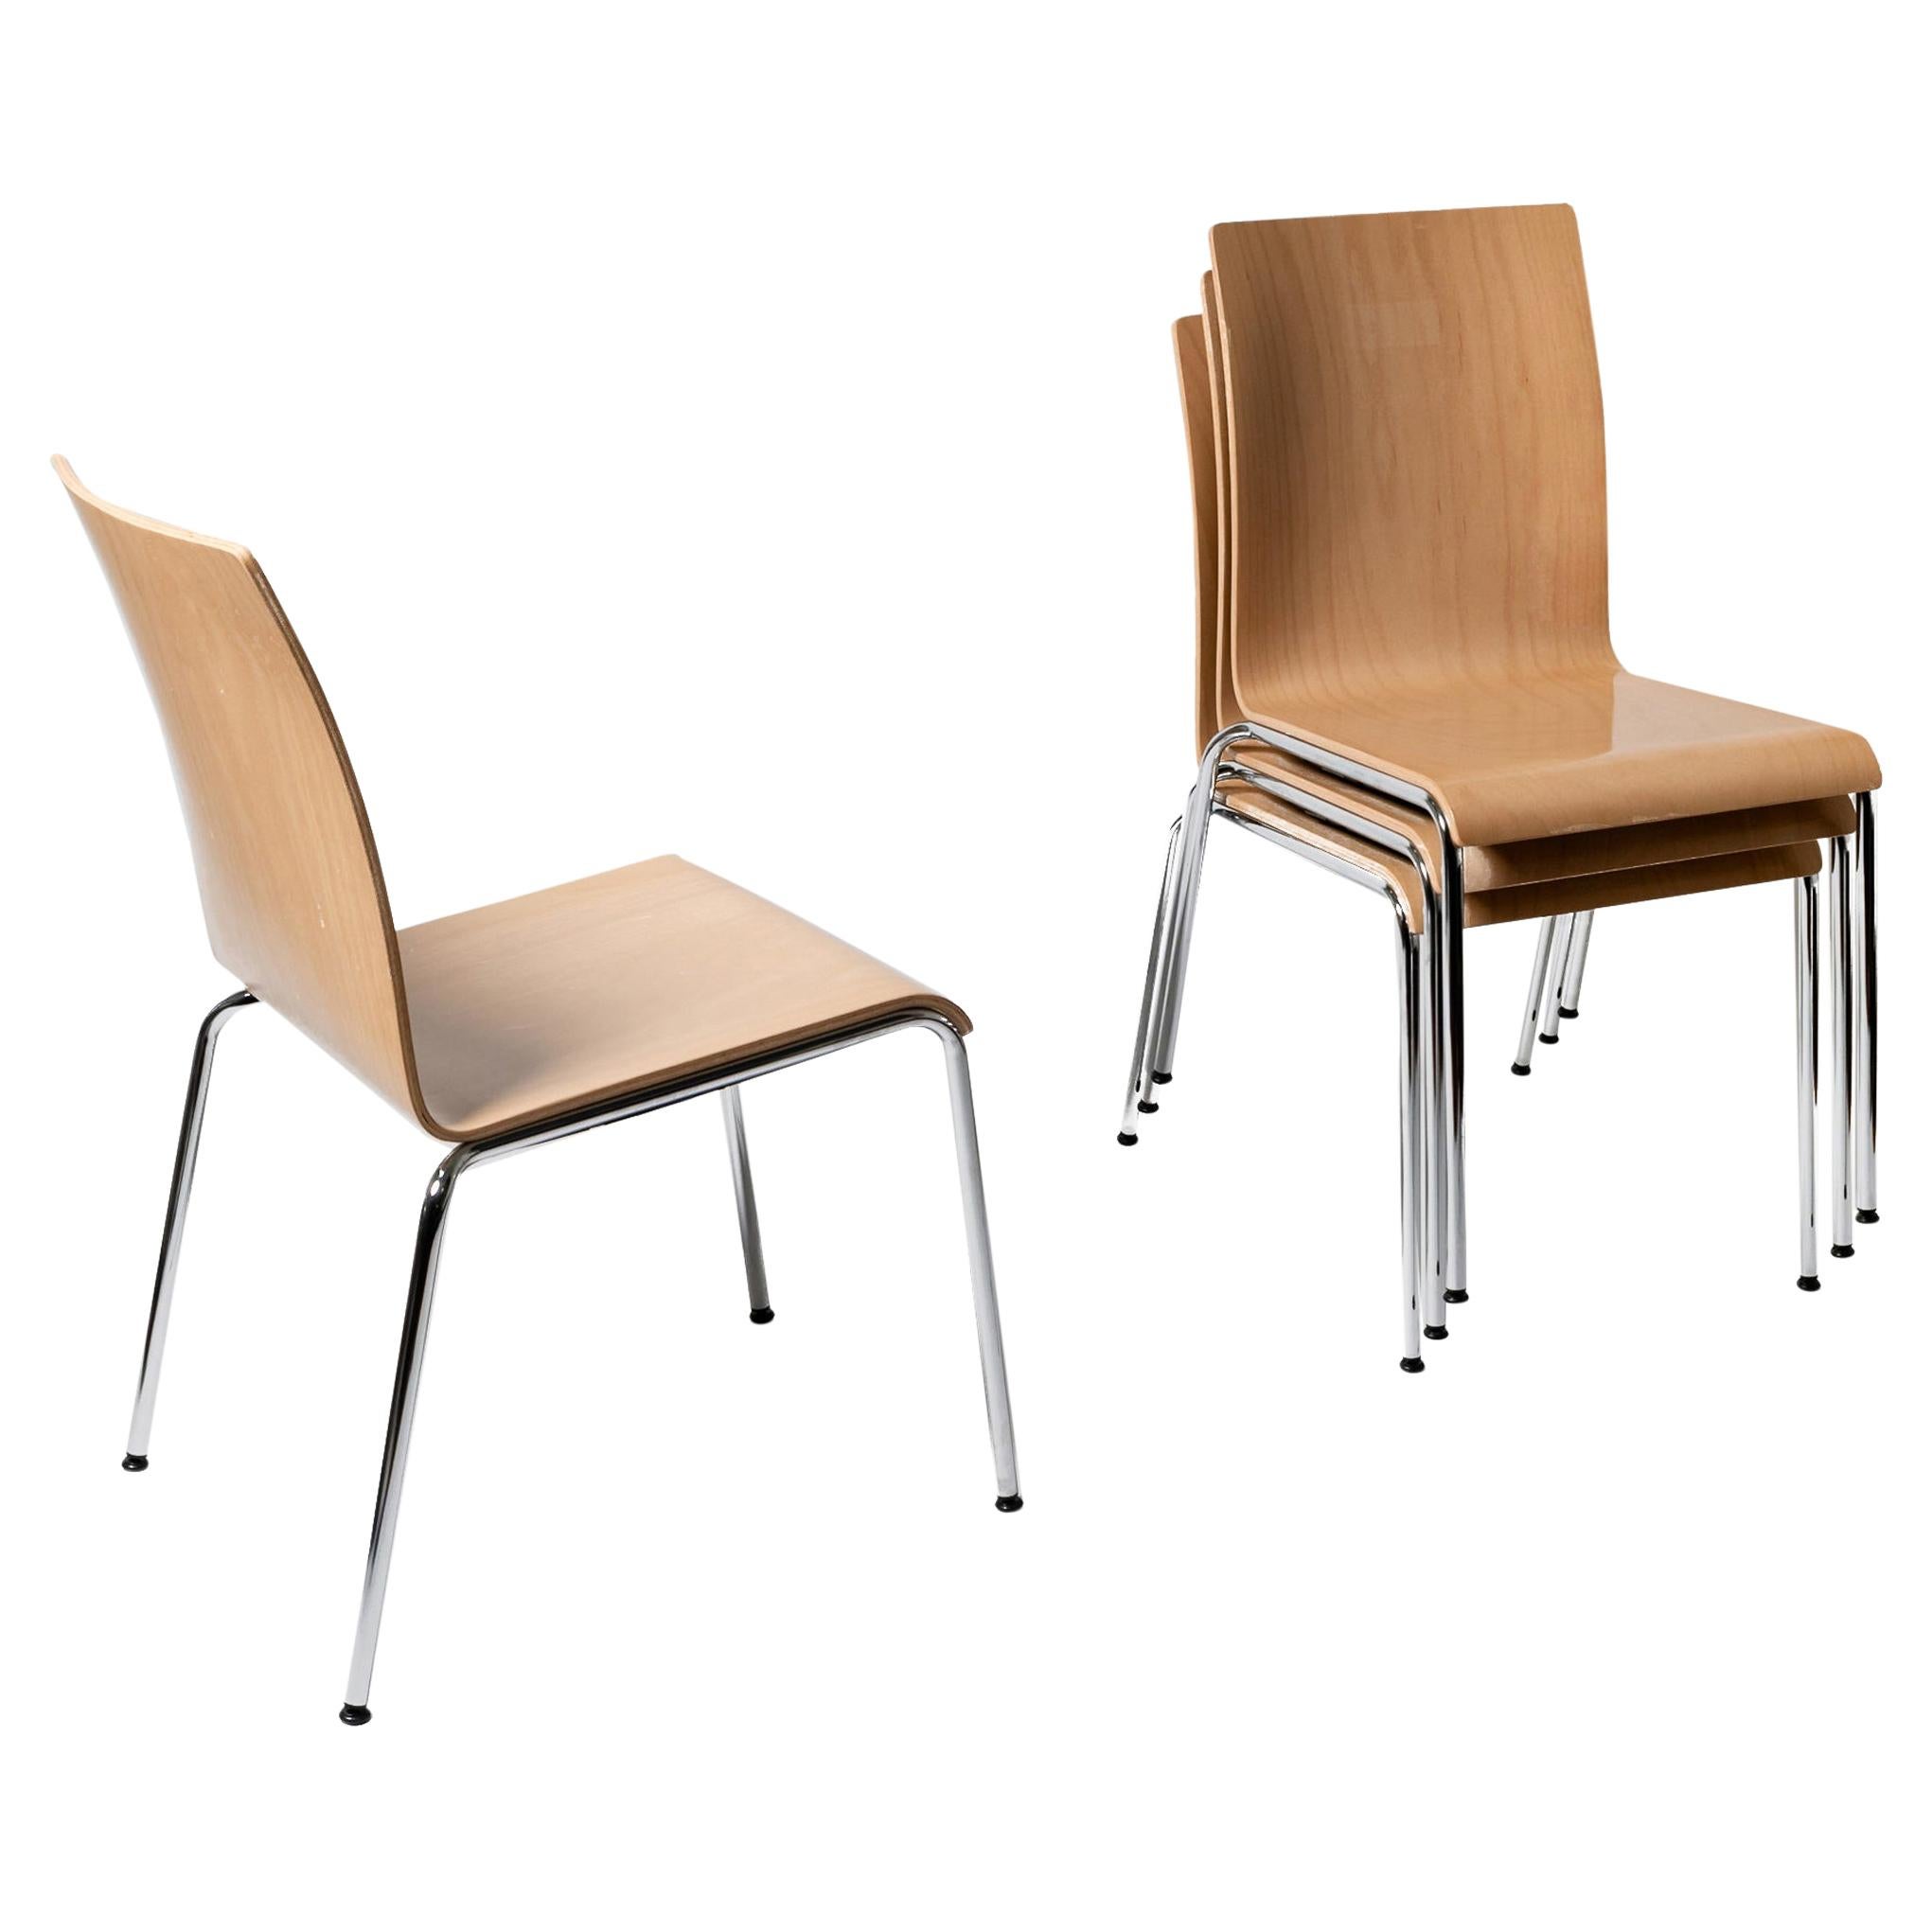 Satz von 4 skandinavisch-modernen Poro S-Esszimmerstühlen aus Buche, hergestellt in der Schweiz